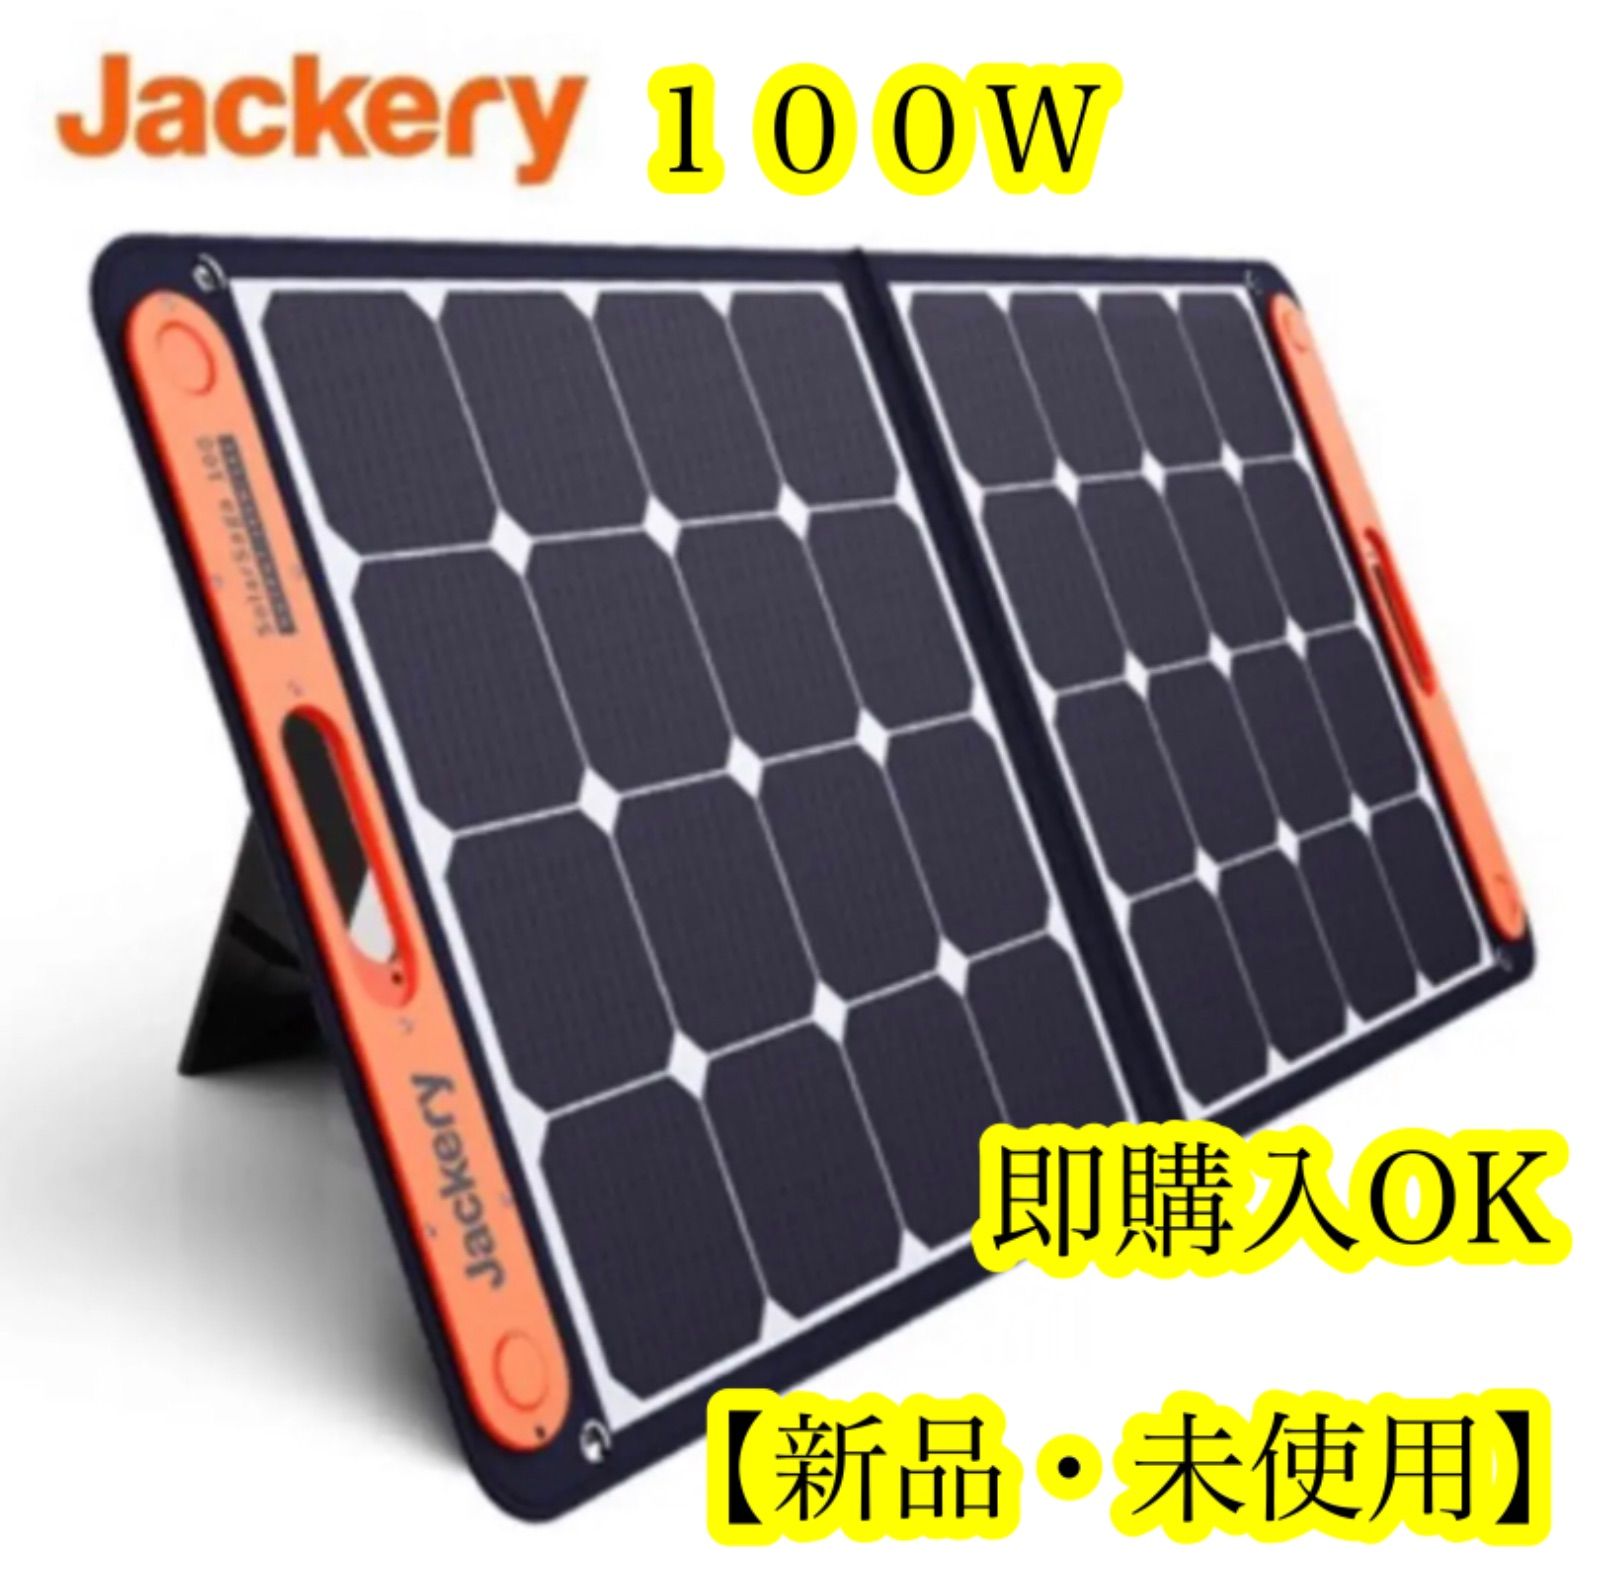 Jackery(ジャクリ)SolarSaga 100 ソーラーパネル100W